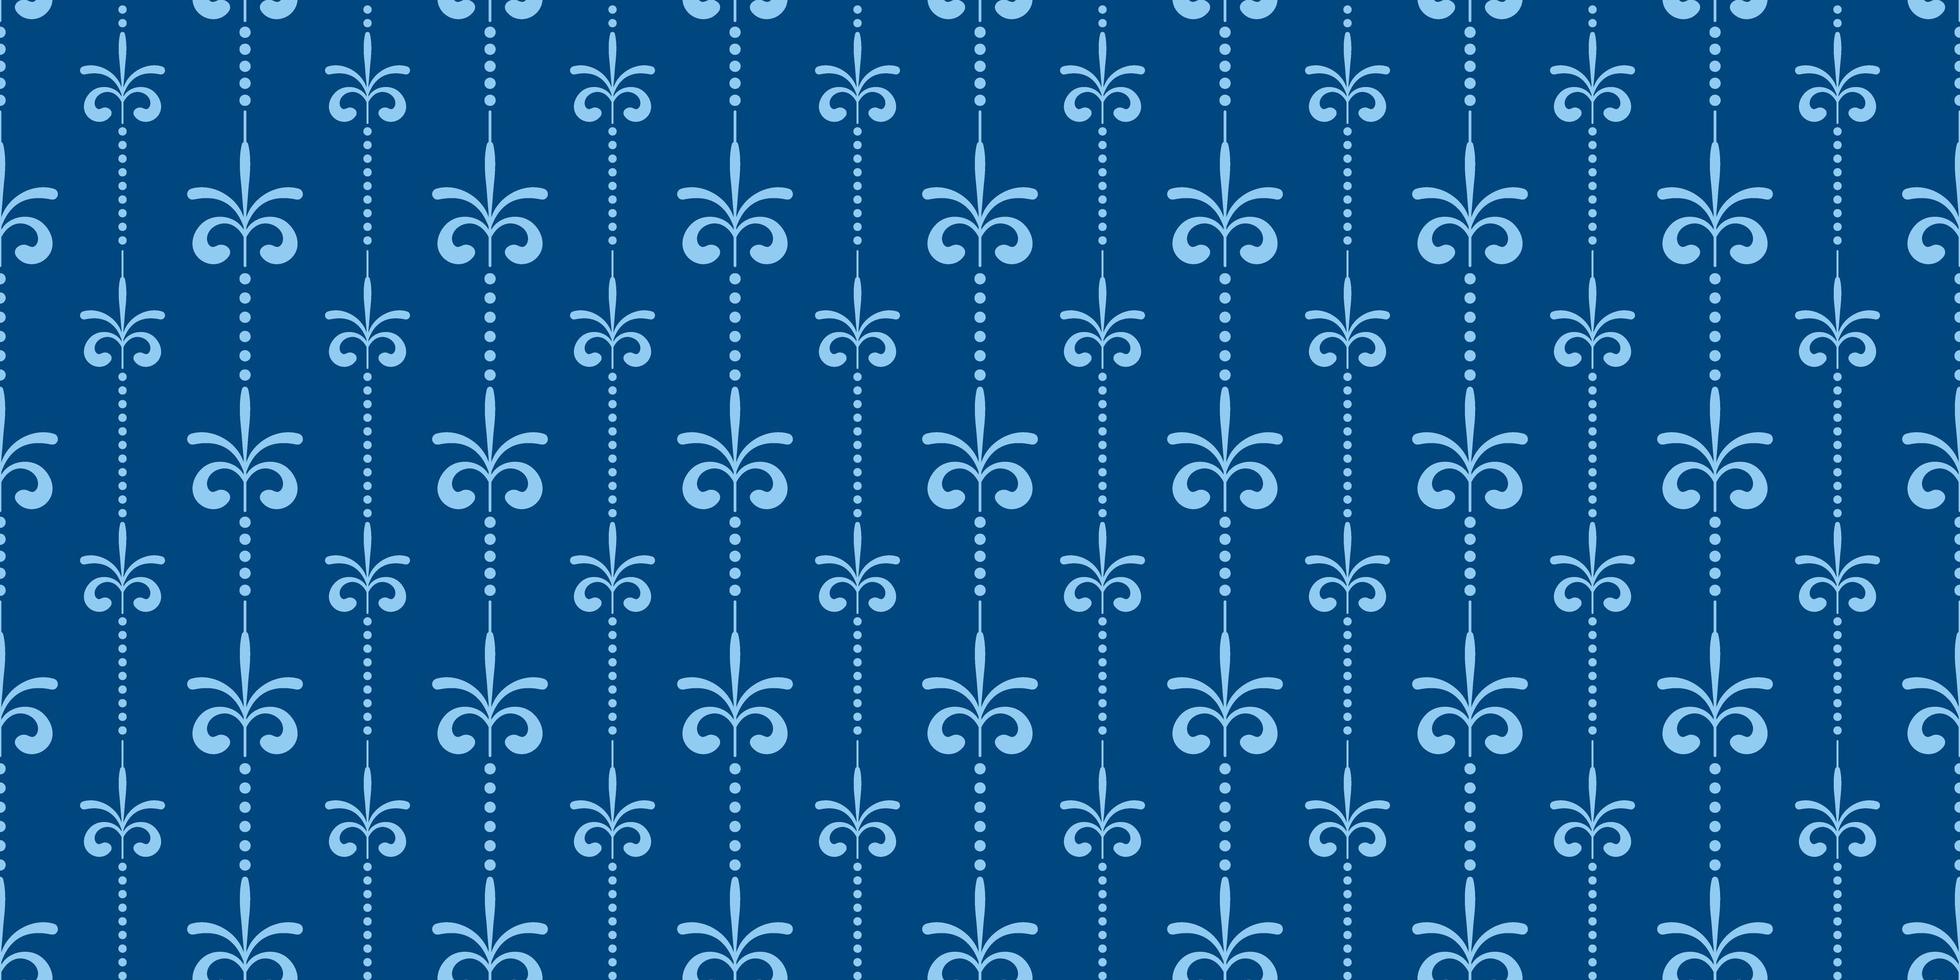 padrão sem emenda de design floral azul vintage vetor